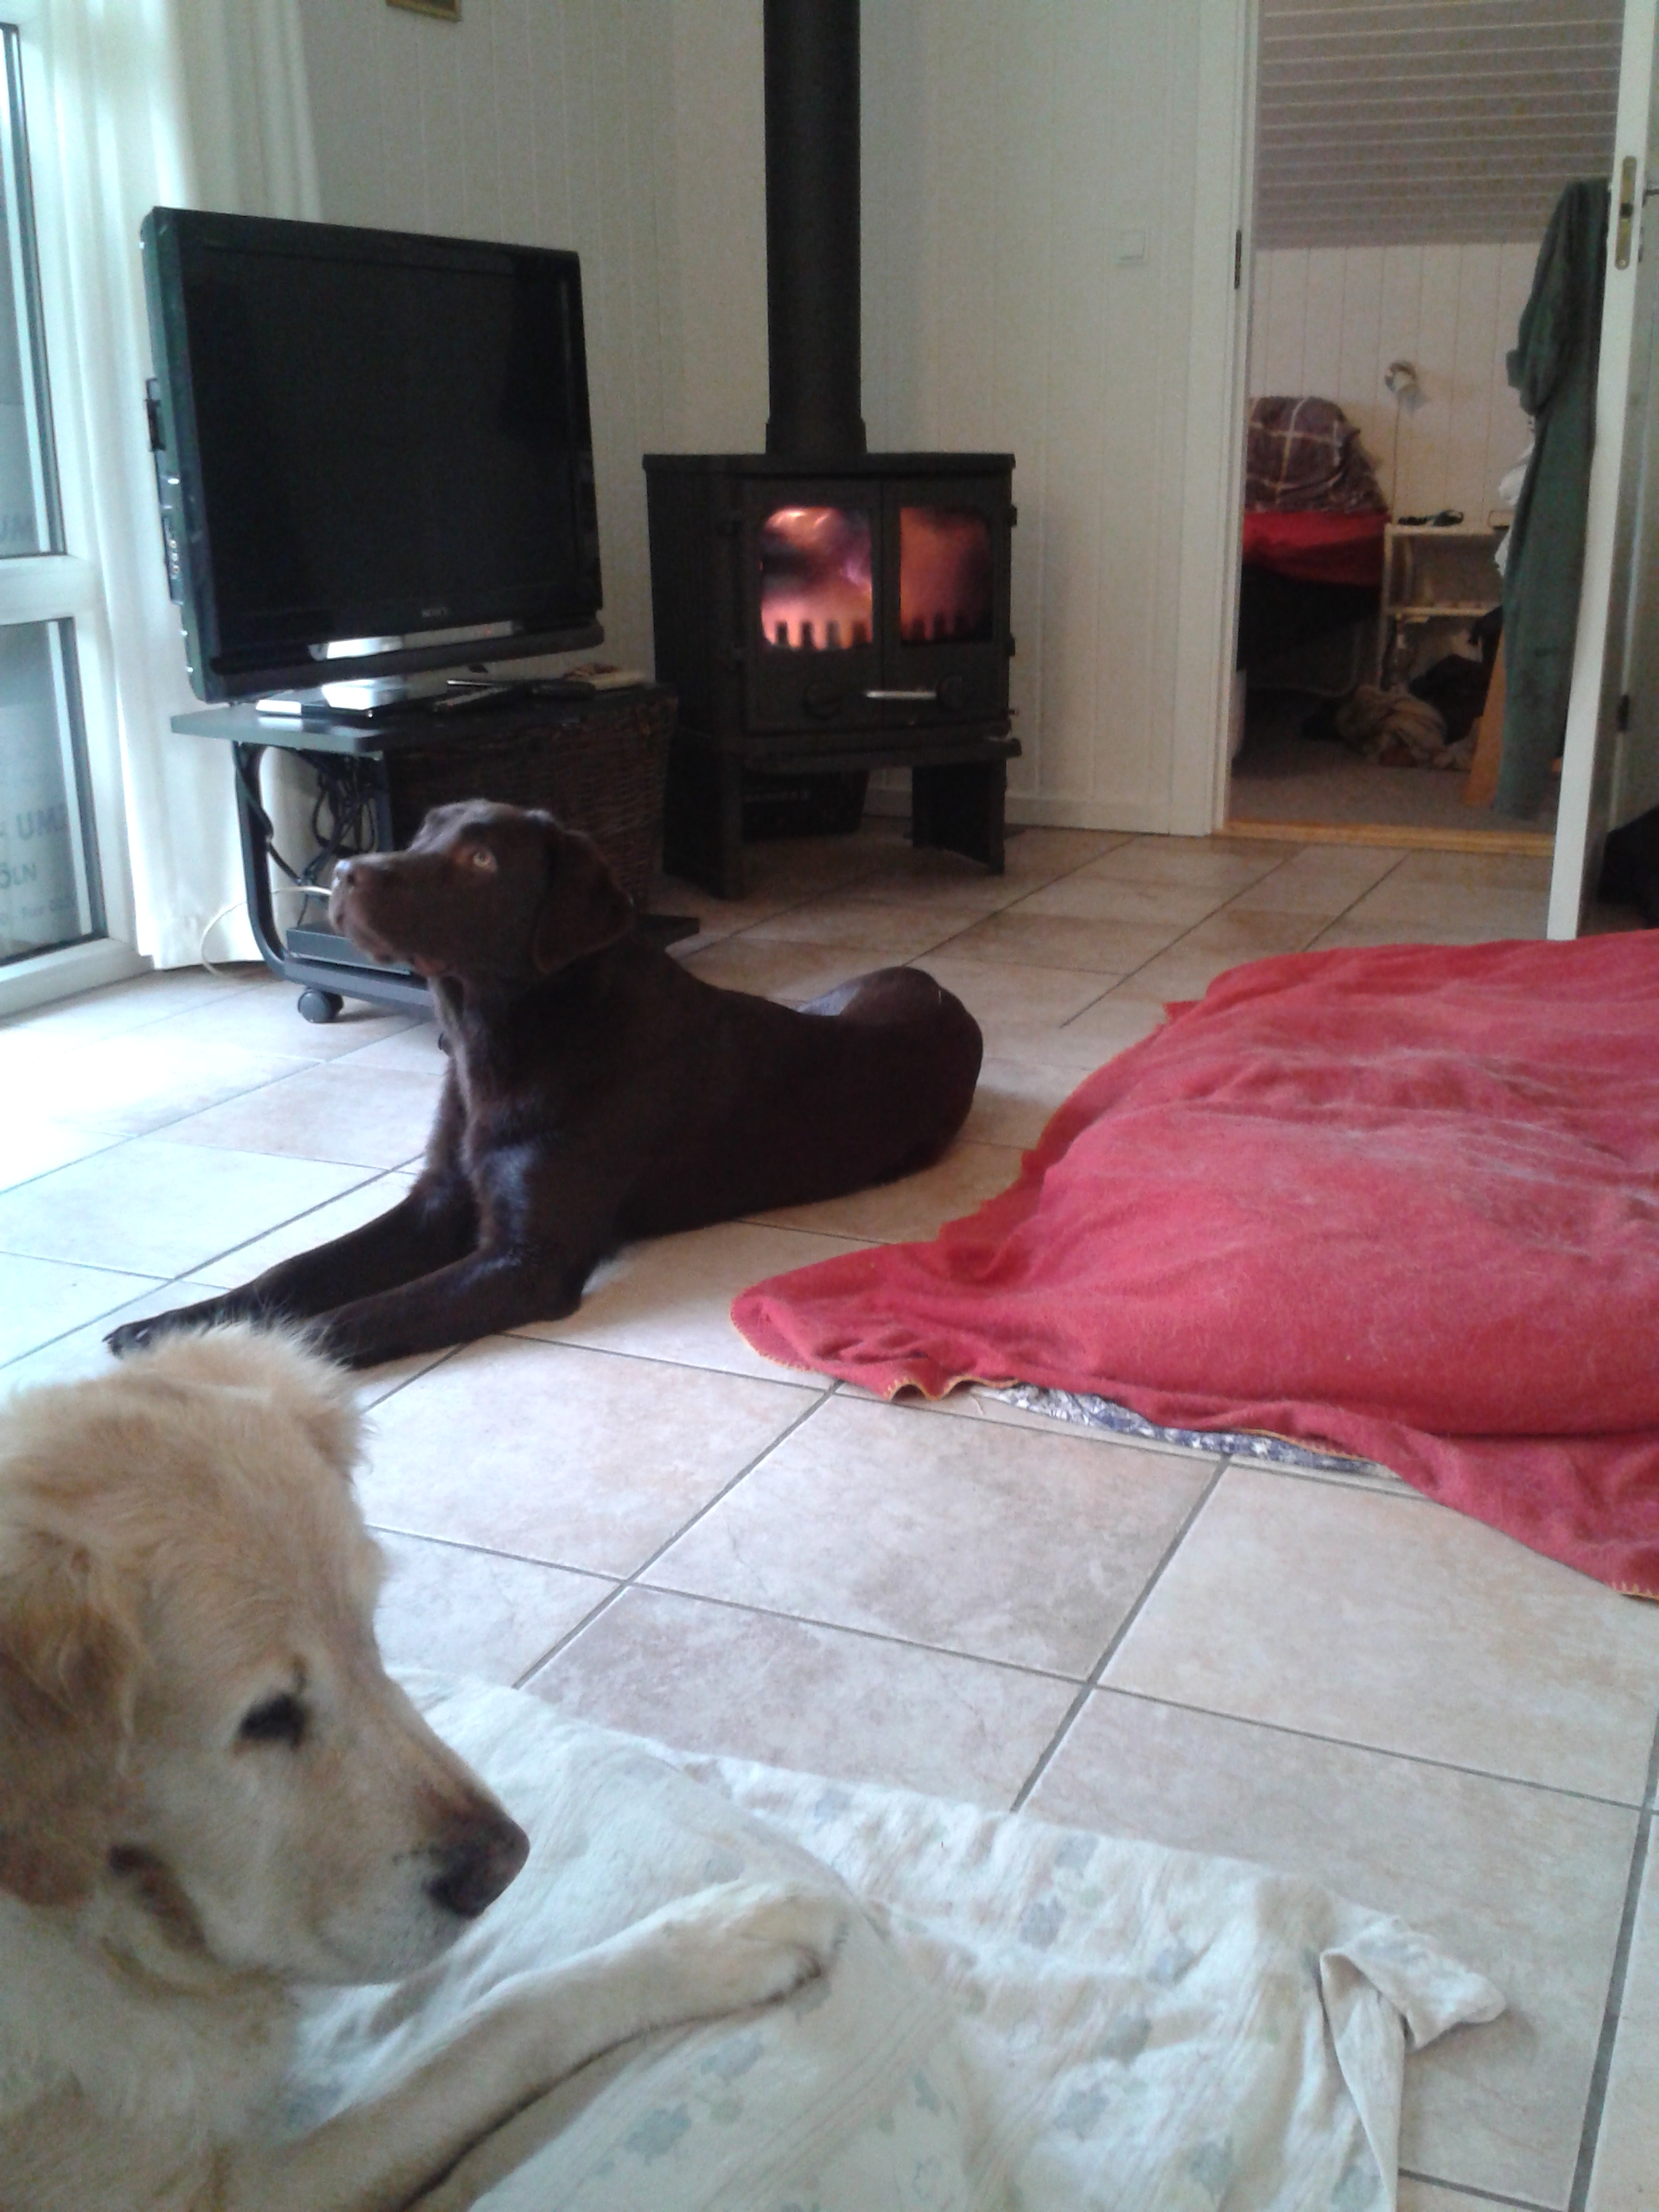 Auf diesem Bild genießen die Hunde das Luegen am warmen Kamin in dem ferienhaus in Dänemark.